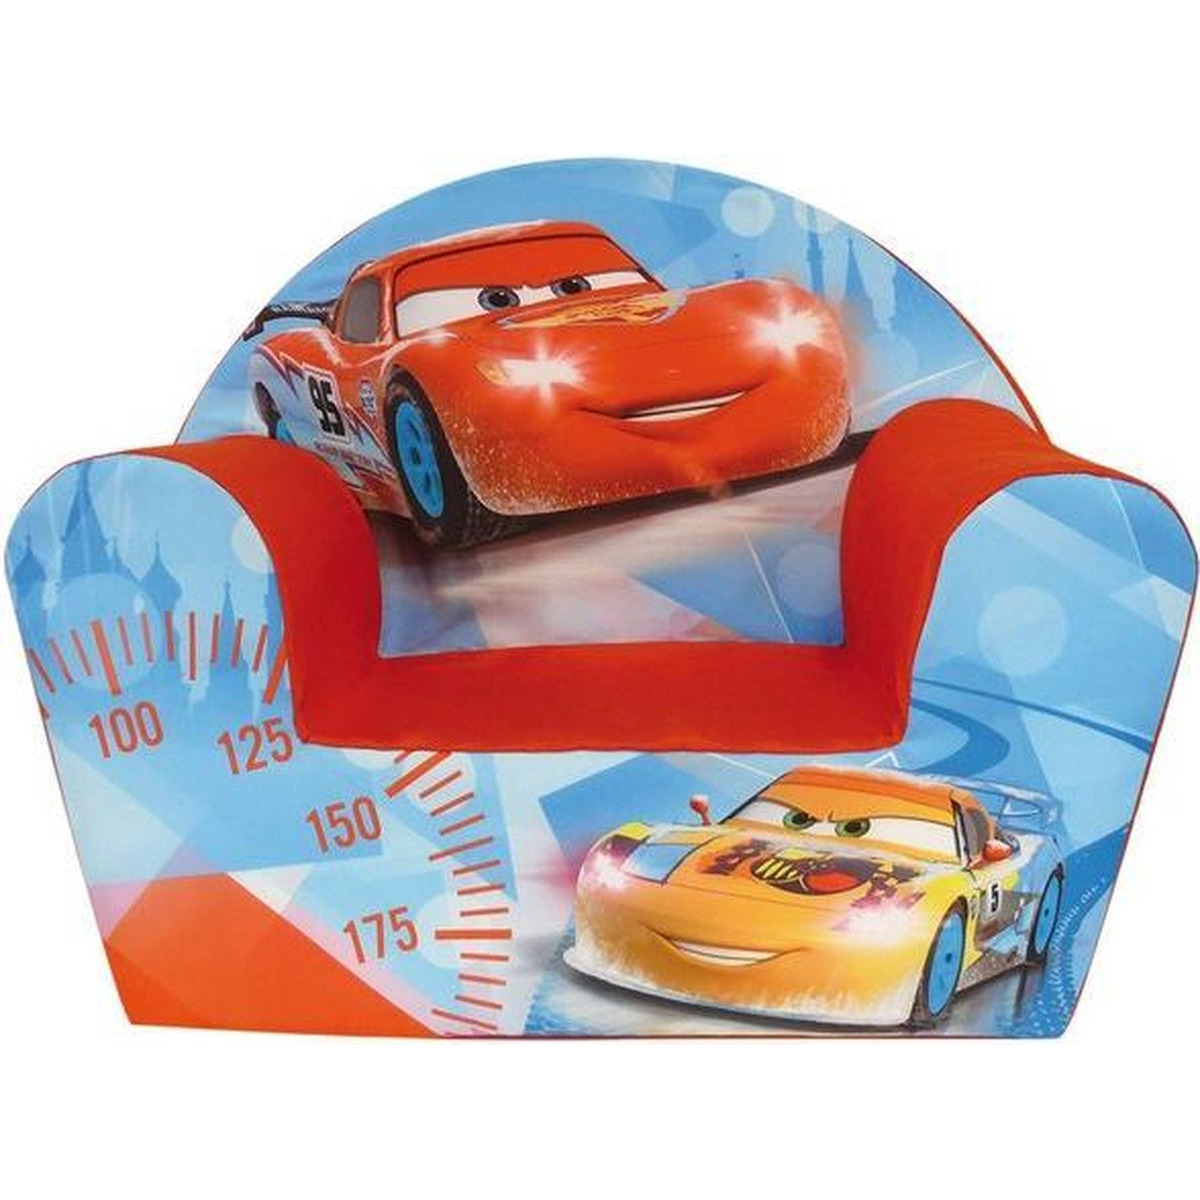 moeilijk tevreden te krijgen Omringd George Hanbury Disney Cars kinderstoel/kinderfauteuil 33 x 52 x 42 cm kindermeubels  bestellen voor € 34.99 bij het Knuffelparadijs